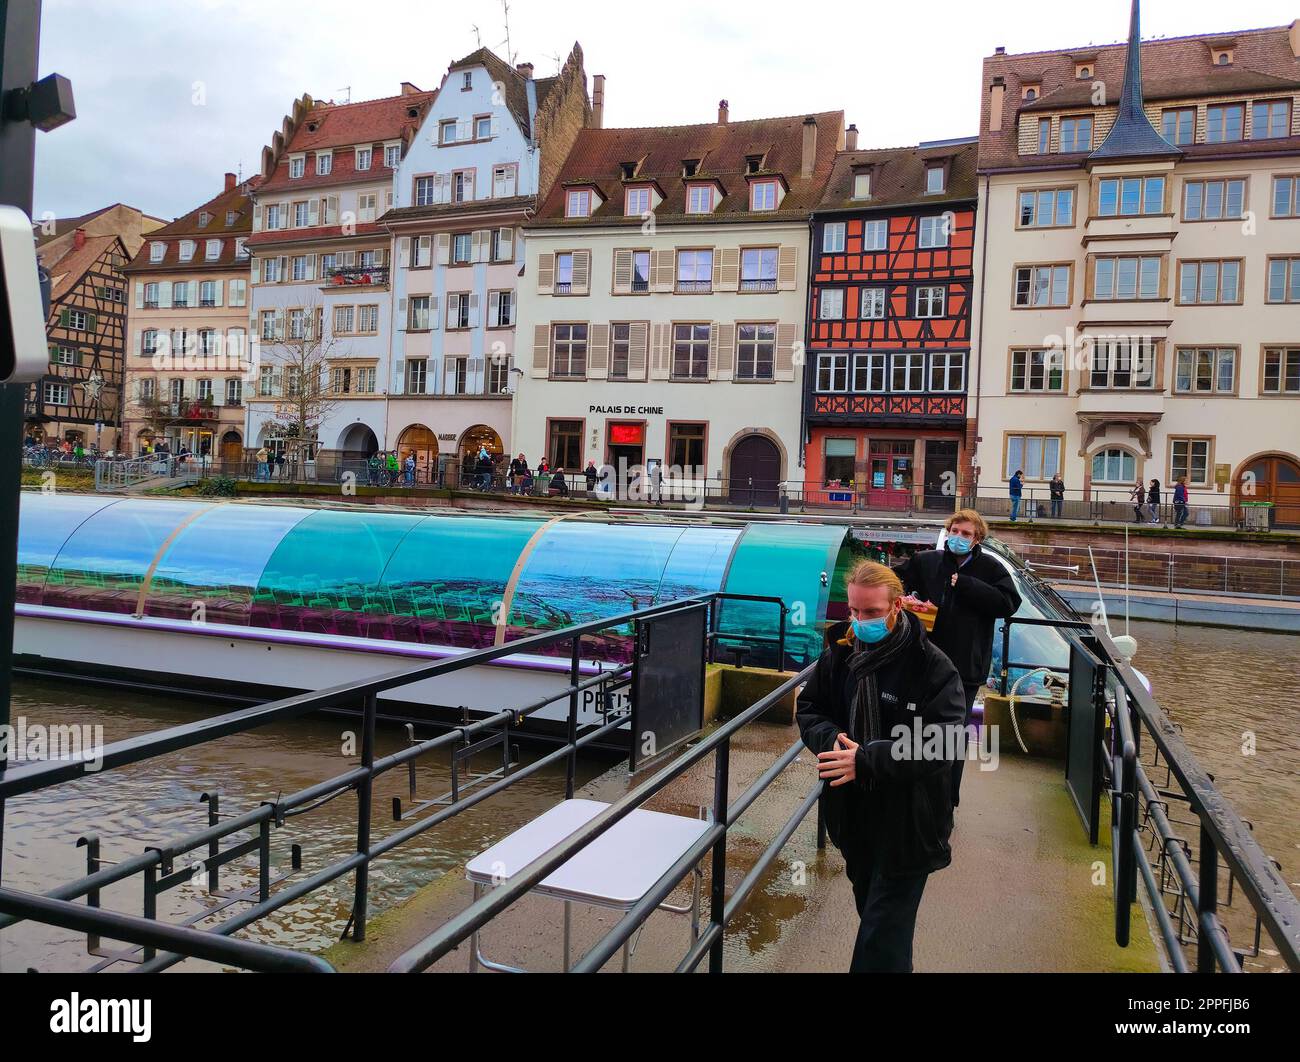 Flussbahn mit Touristen auf einem Wasserkanal vor uralten Häusern. Blick auf den Fluss. Straßburg, Frankreich. Berühmtes Touristenziel, Reisen, Tourismus Stockfoto